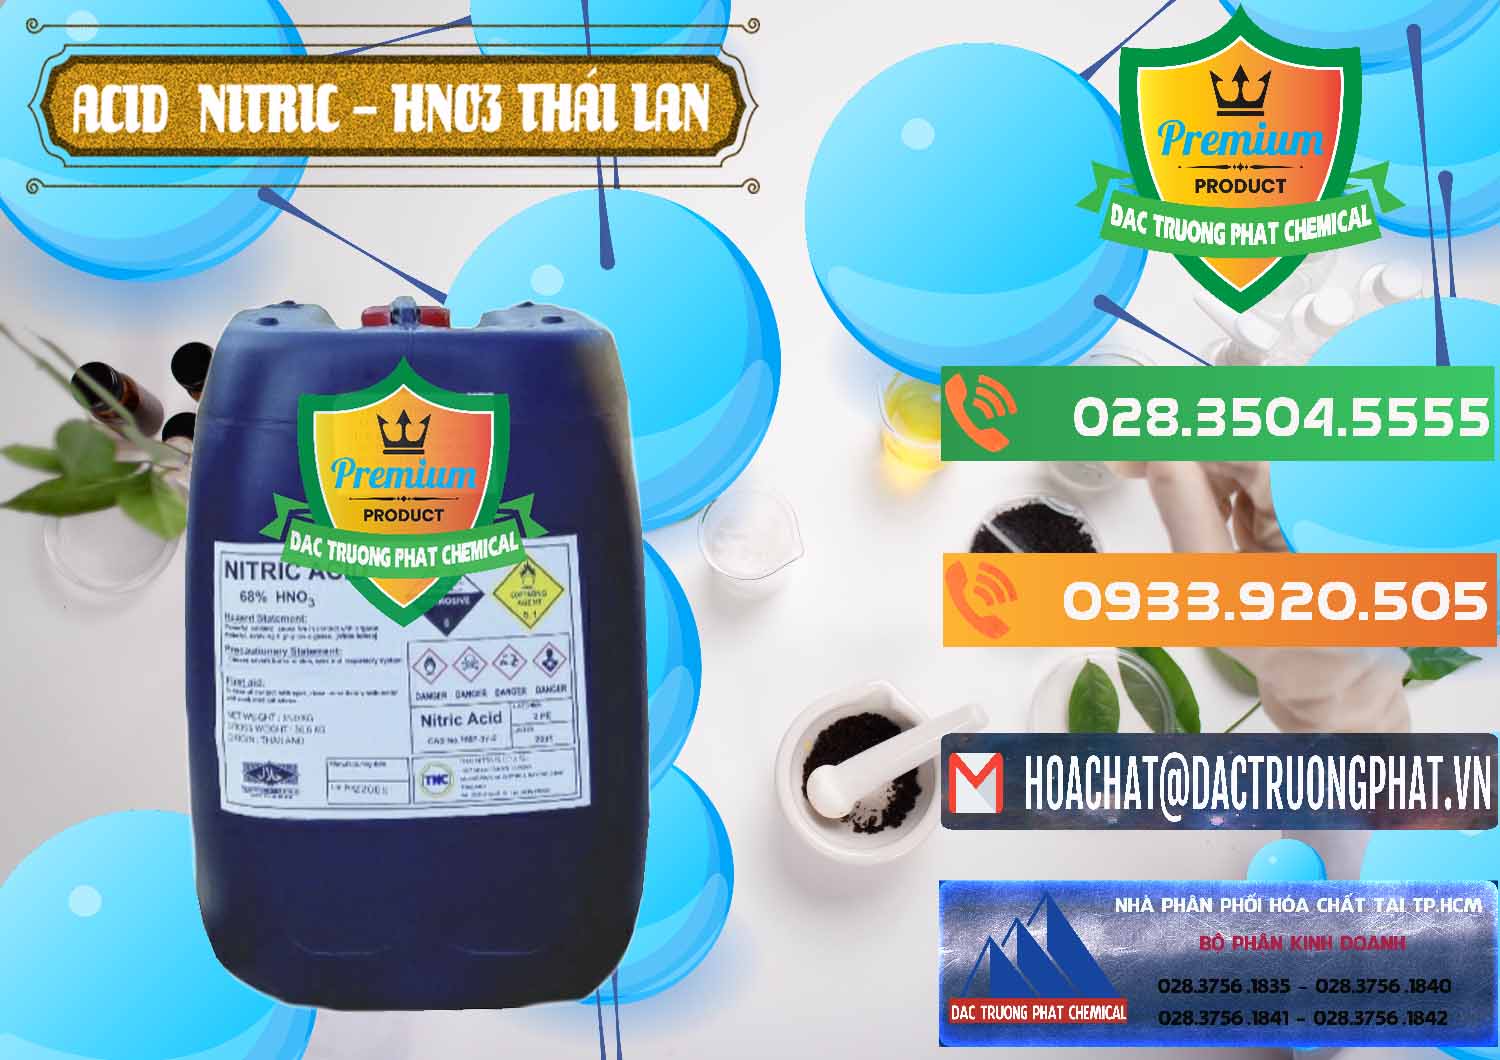 Công ty chuyên bán & cung cấp Acid Nitric – Axit Nitric HNO3 Thái Lan Thailand - 0344 - Cty chuyên cung cấp & nhập khẩu hóa chất tại TP.HCM - hoachatxulynuoc.com.vn